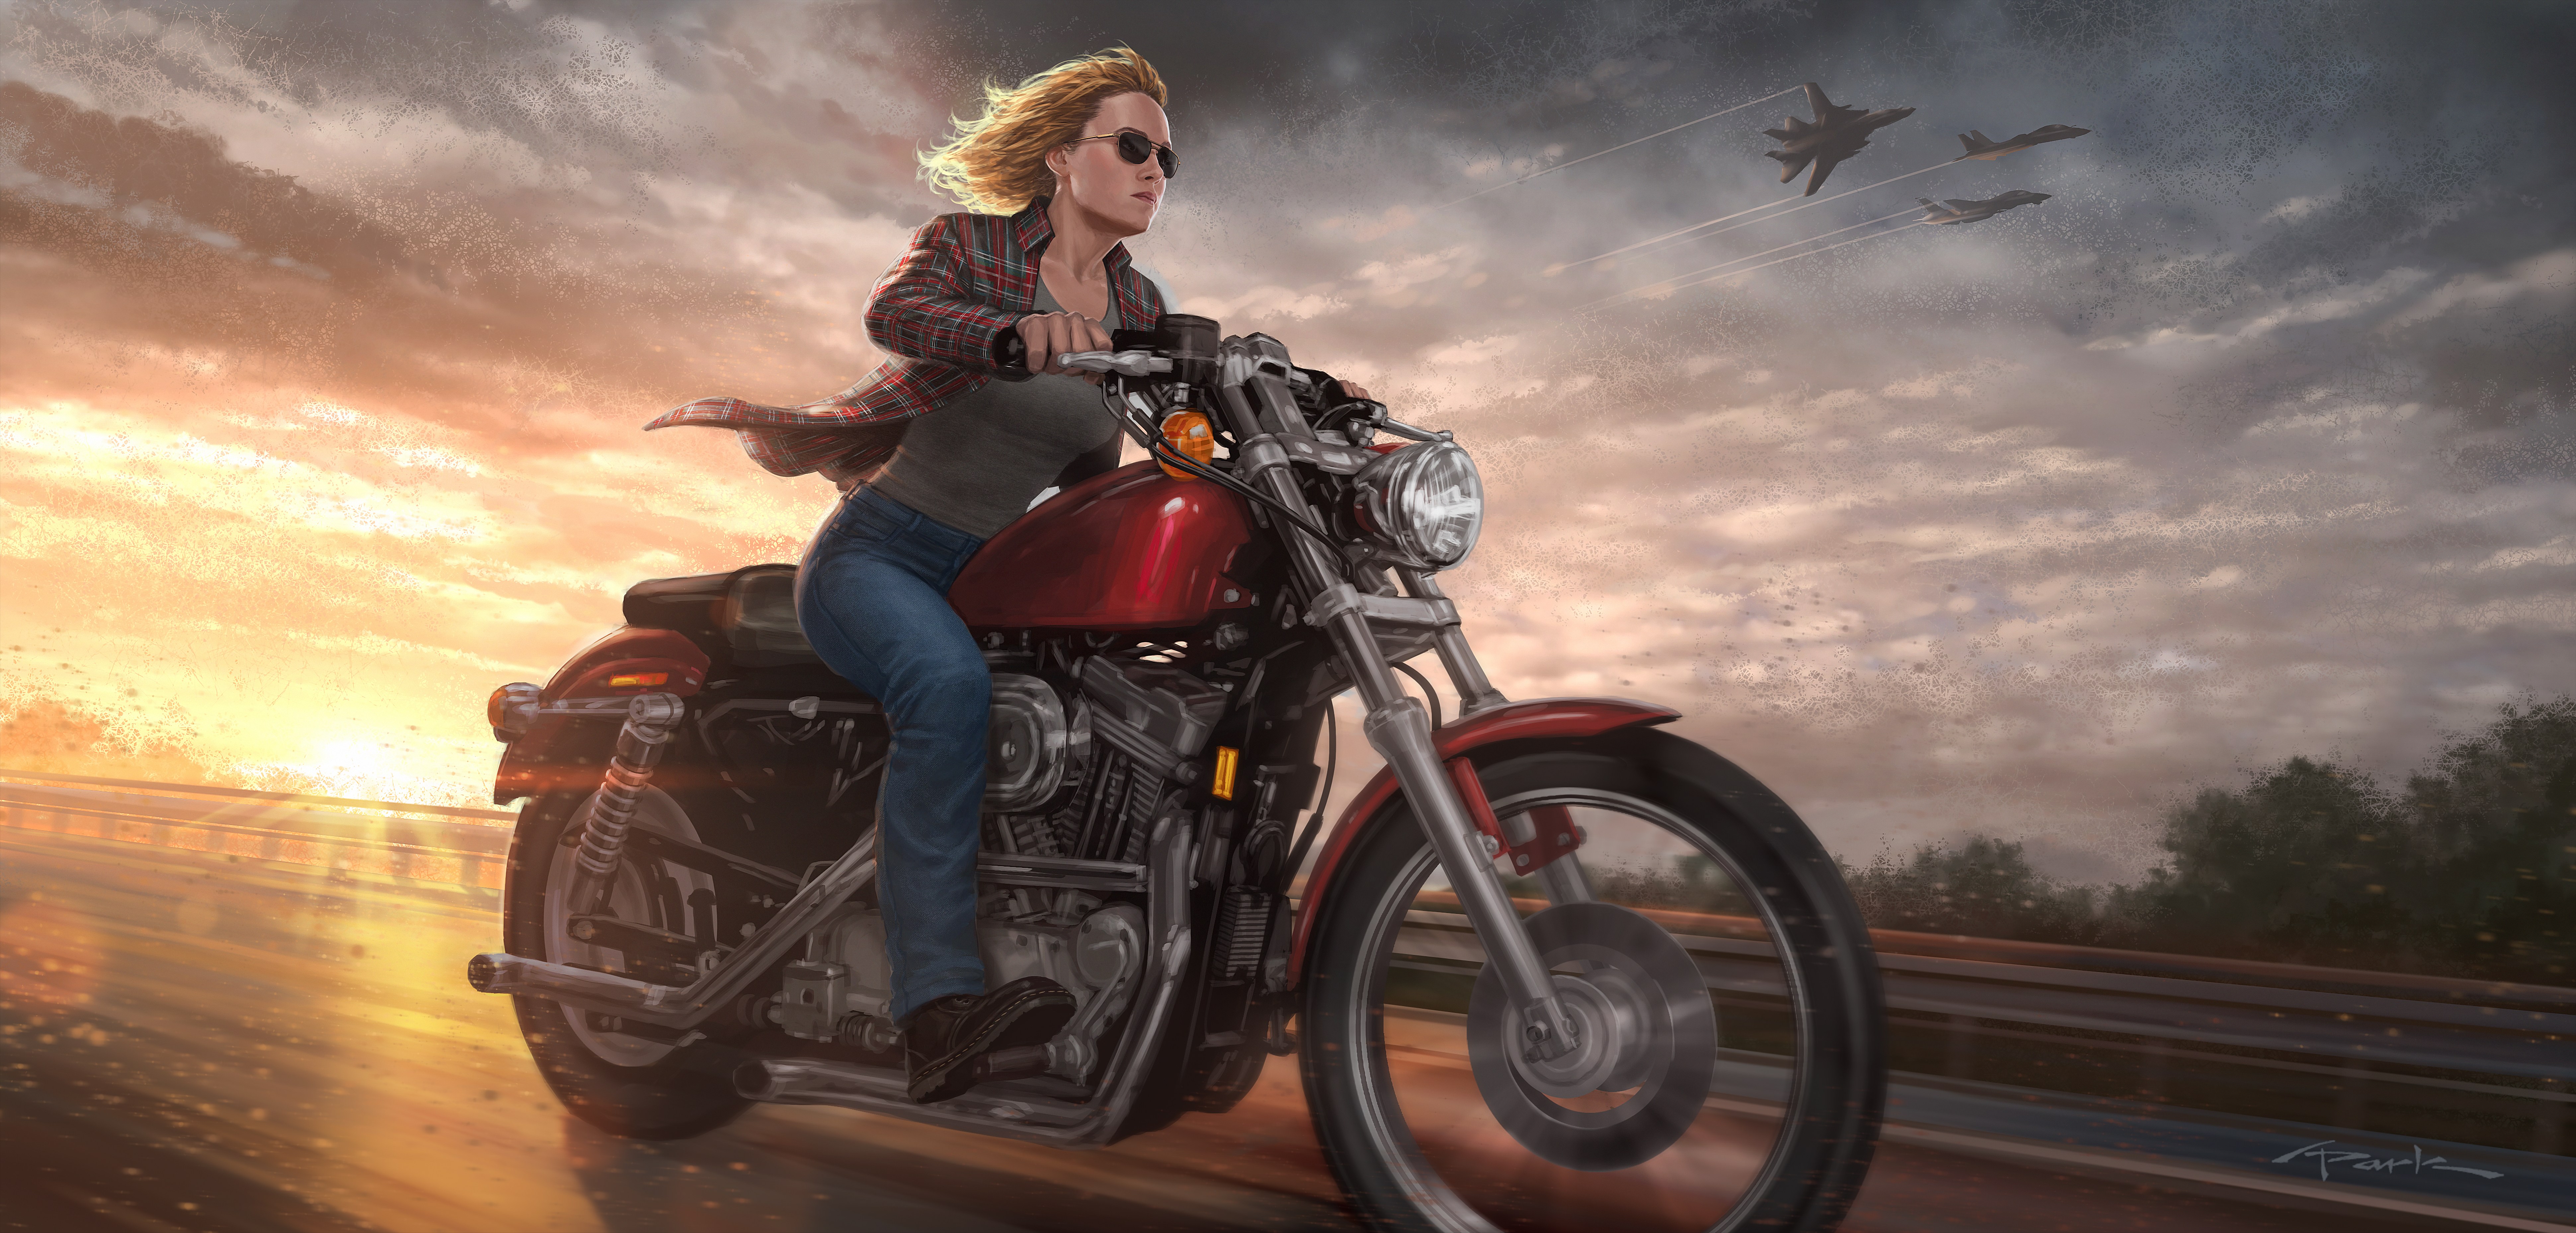 Descarga gratuita de fondo de pantalla para móvil de Motocicleta, Películas, Rubia, Capitana Marvel, Brie Larson.